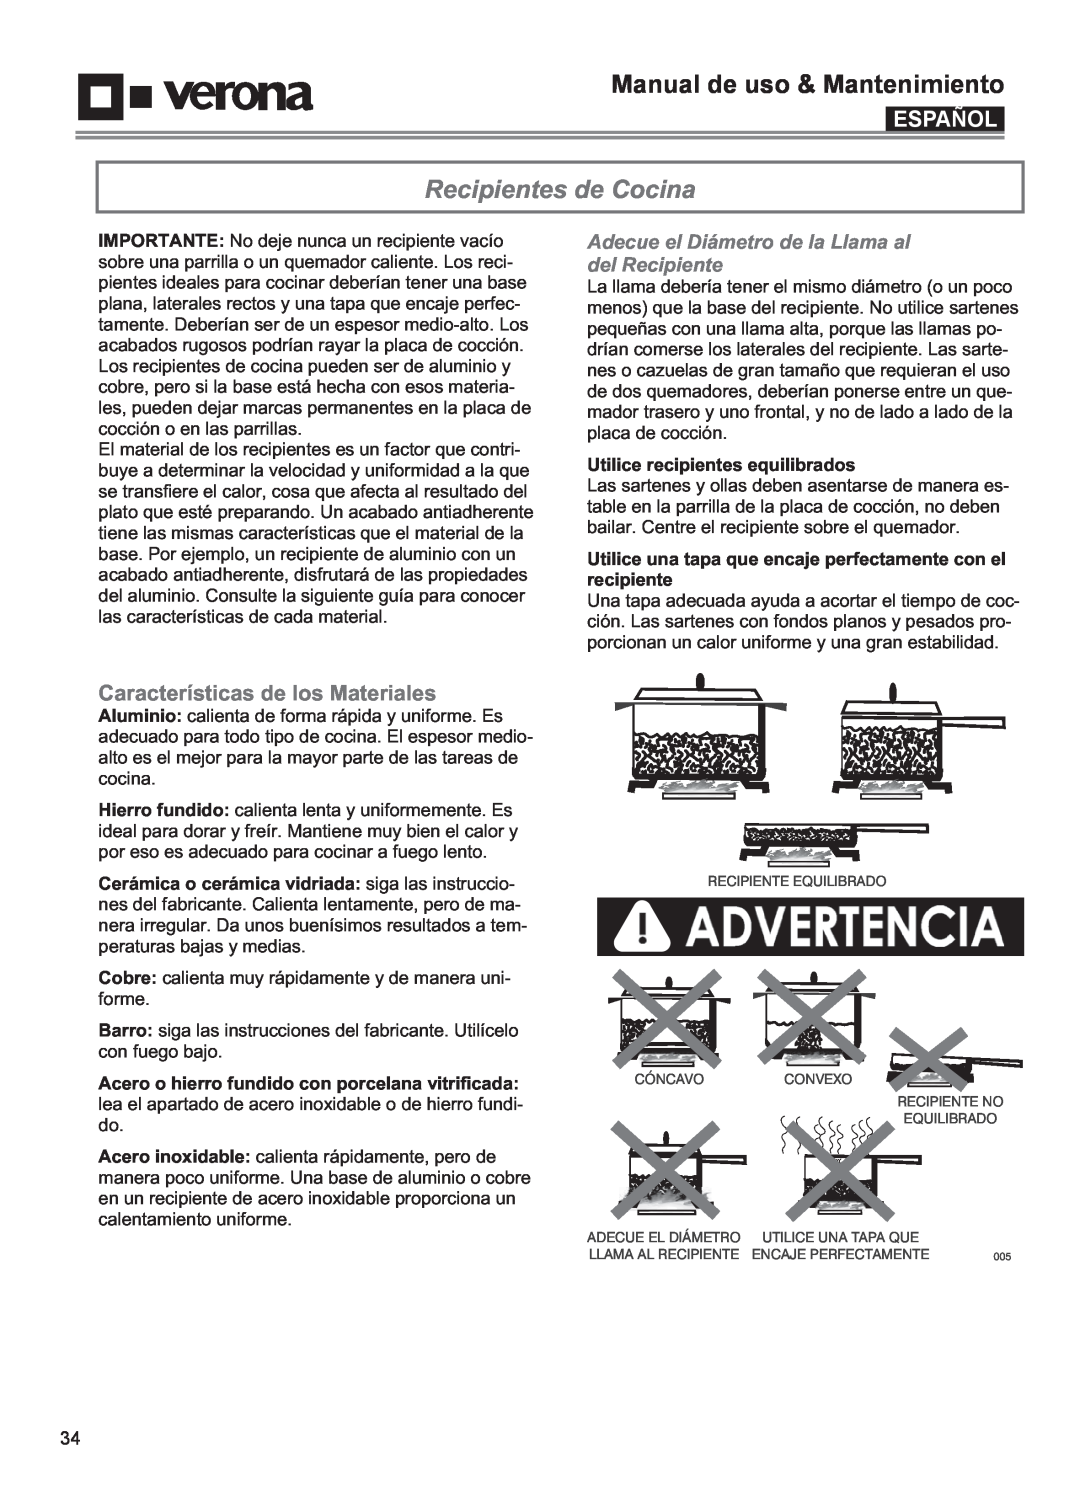 Verona VECTGV365SS Recipientes de Cocina, Características de los Materiales, Utilice recipientes equilibrados, Español 